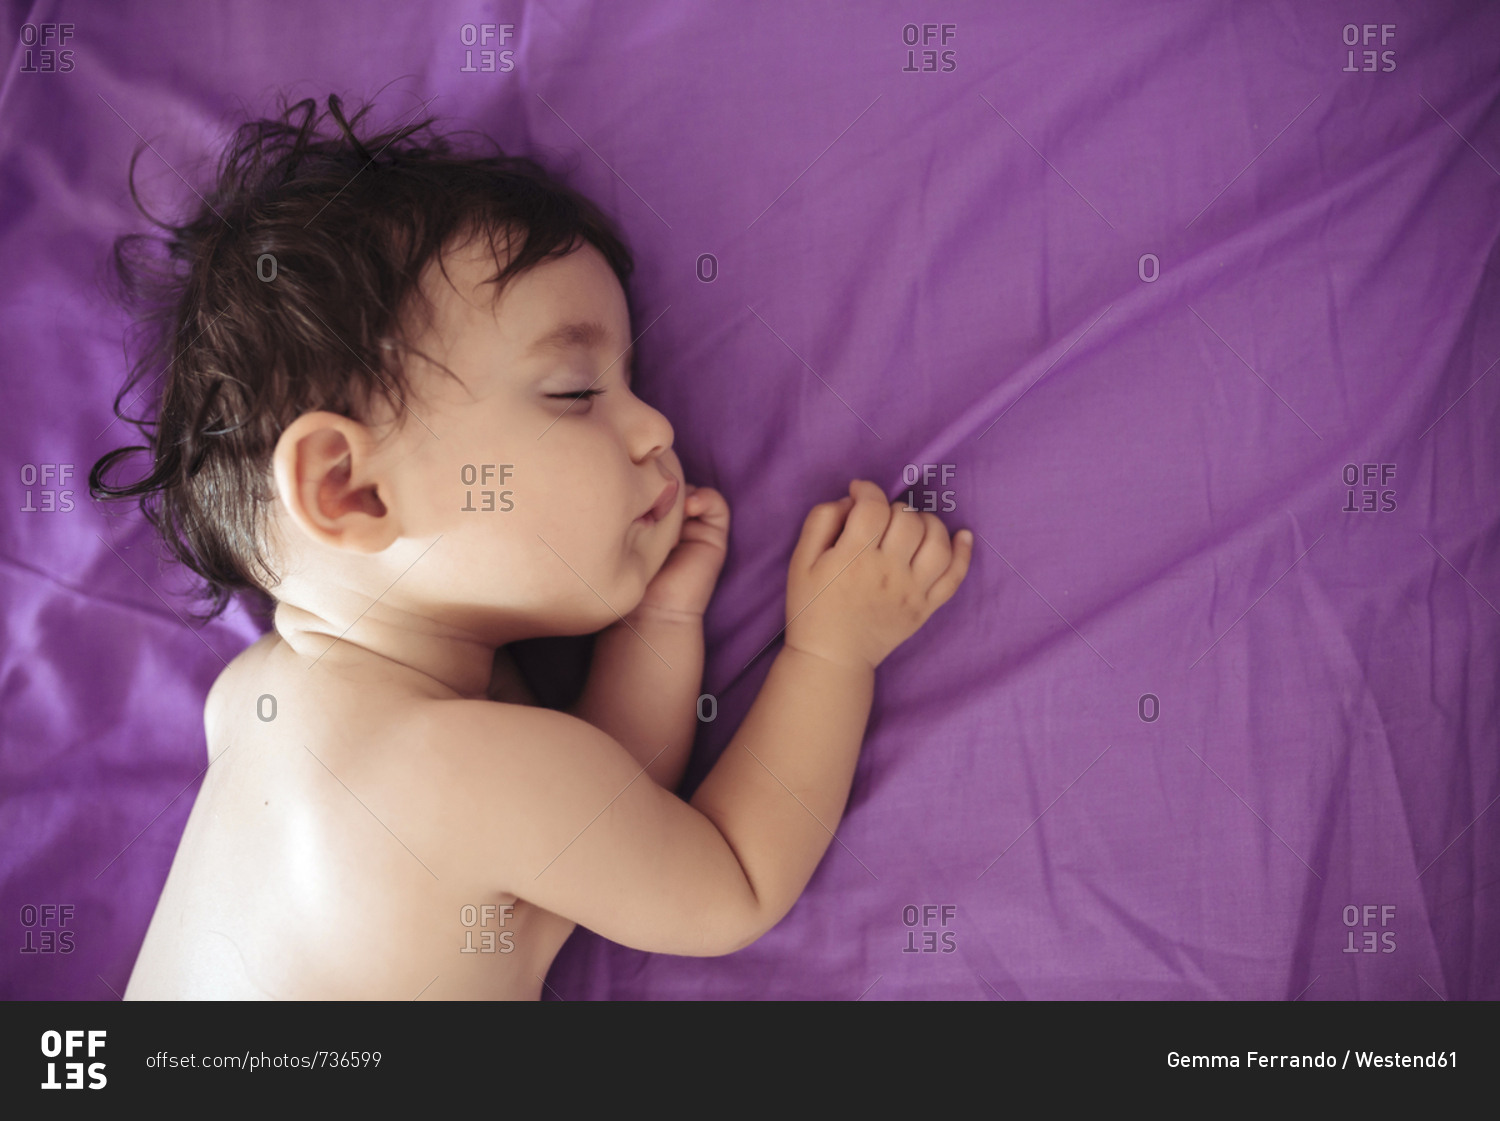 Sleeping baby girl on purple bed sheet